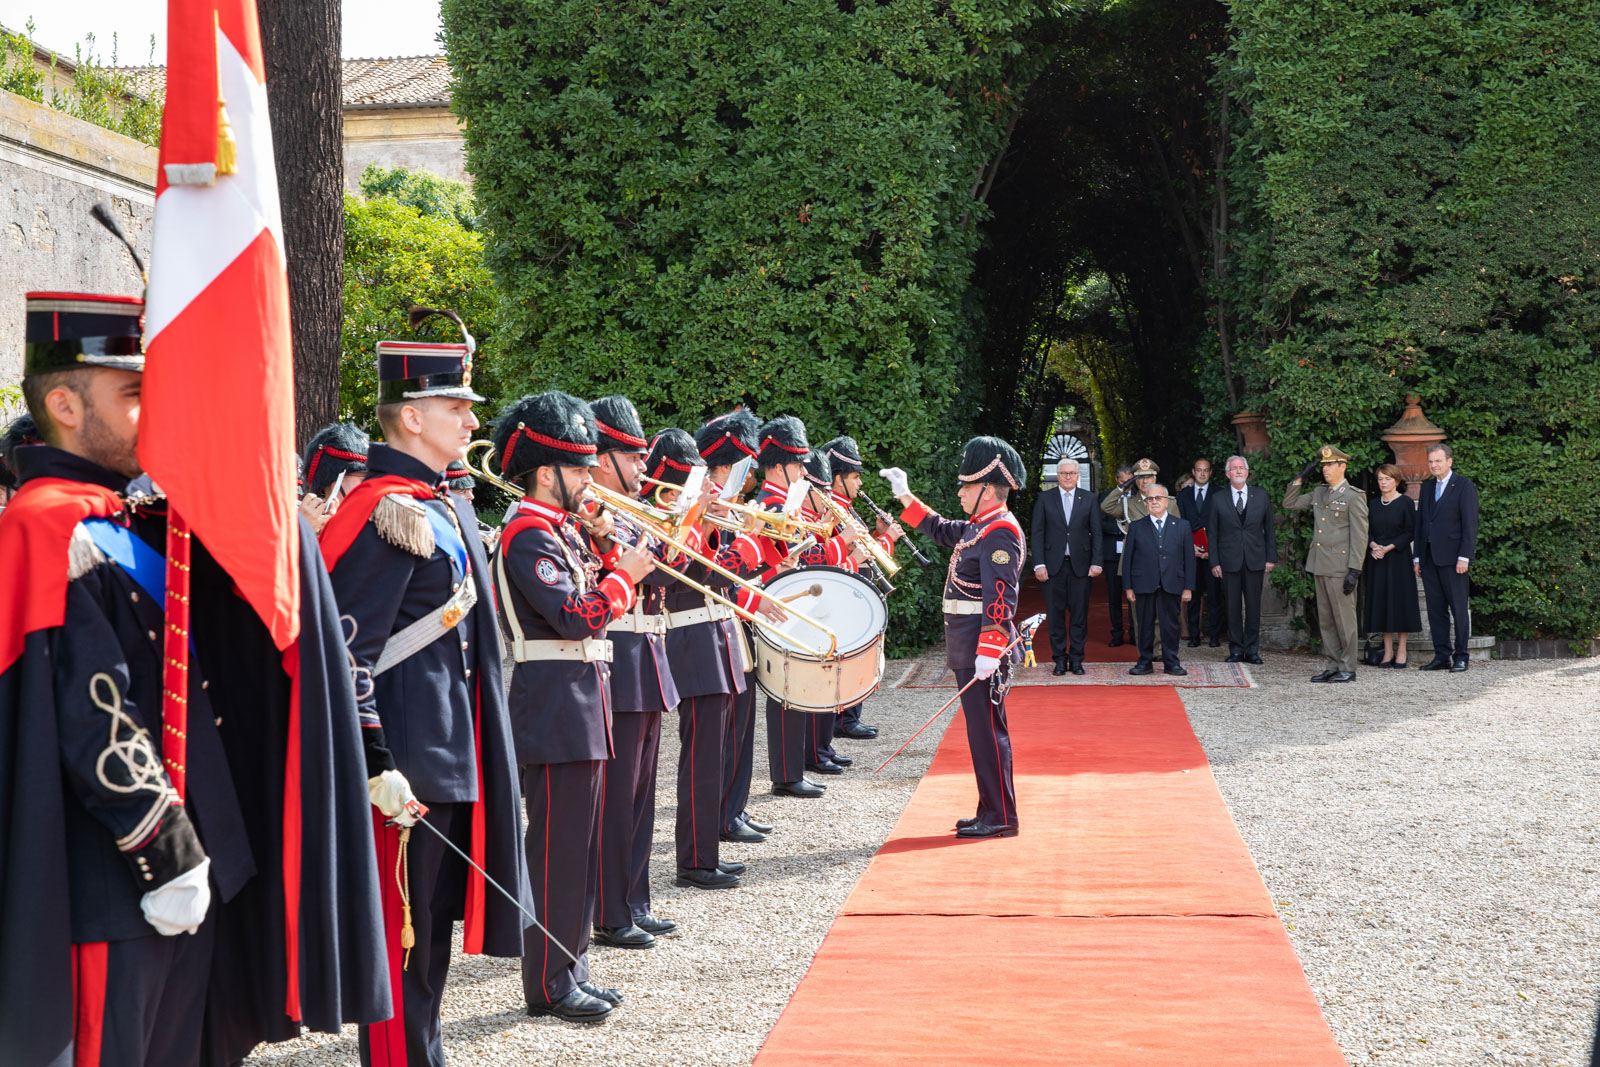 Le président allemand Frank-Walter Steinmeier reçu par l’Ordre souverain de Malte